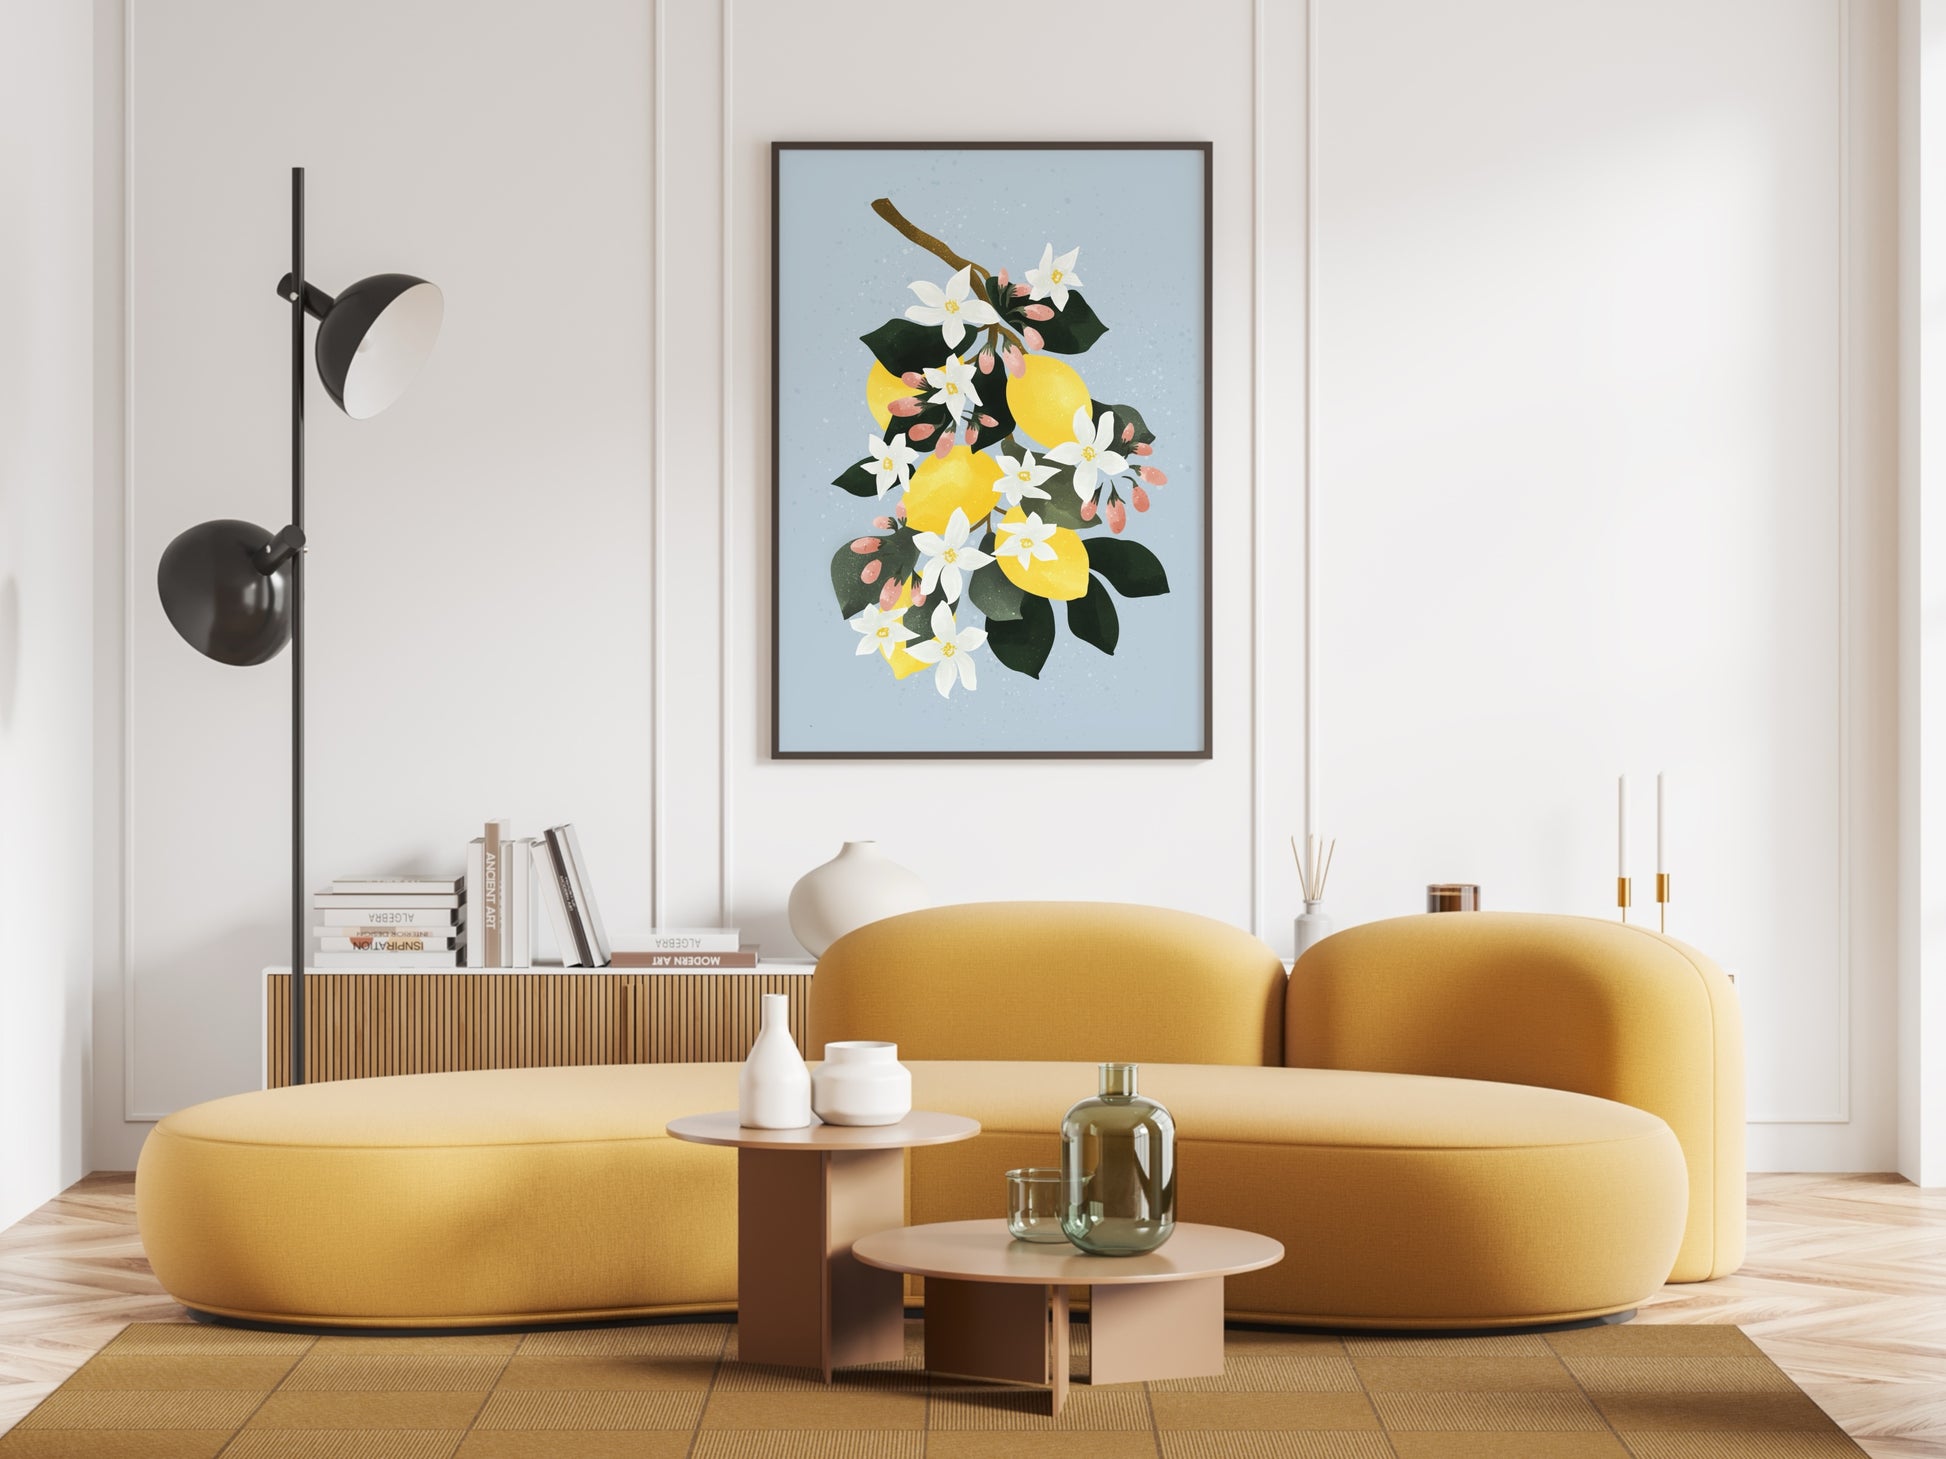 färgklick på väggen med ett stor motiv av en citrusposter med gula citroner, vita blommor och rosa knoppar.